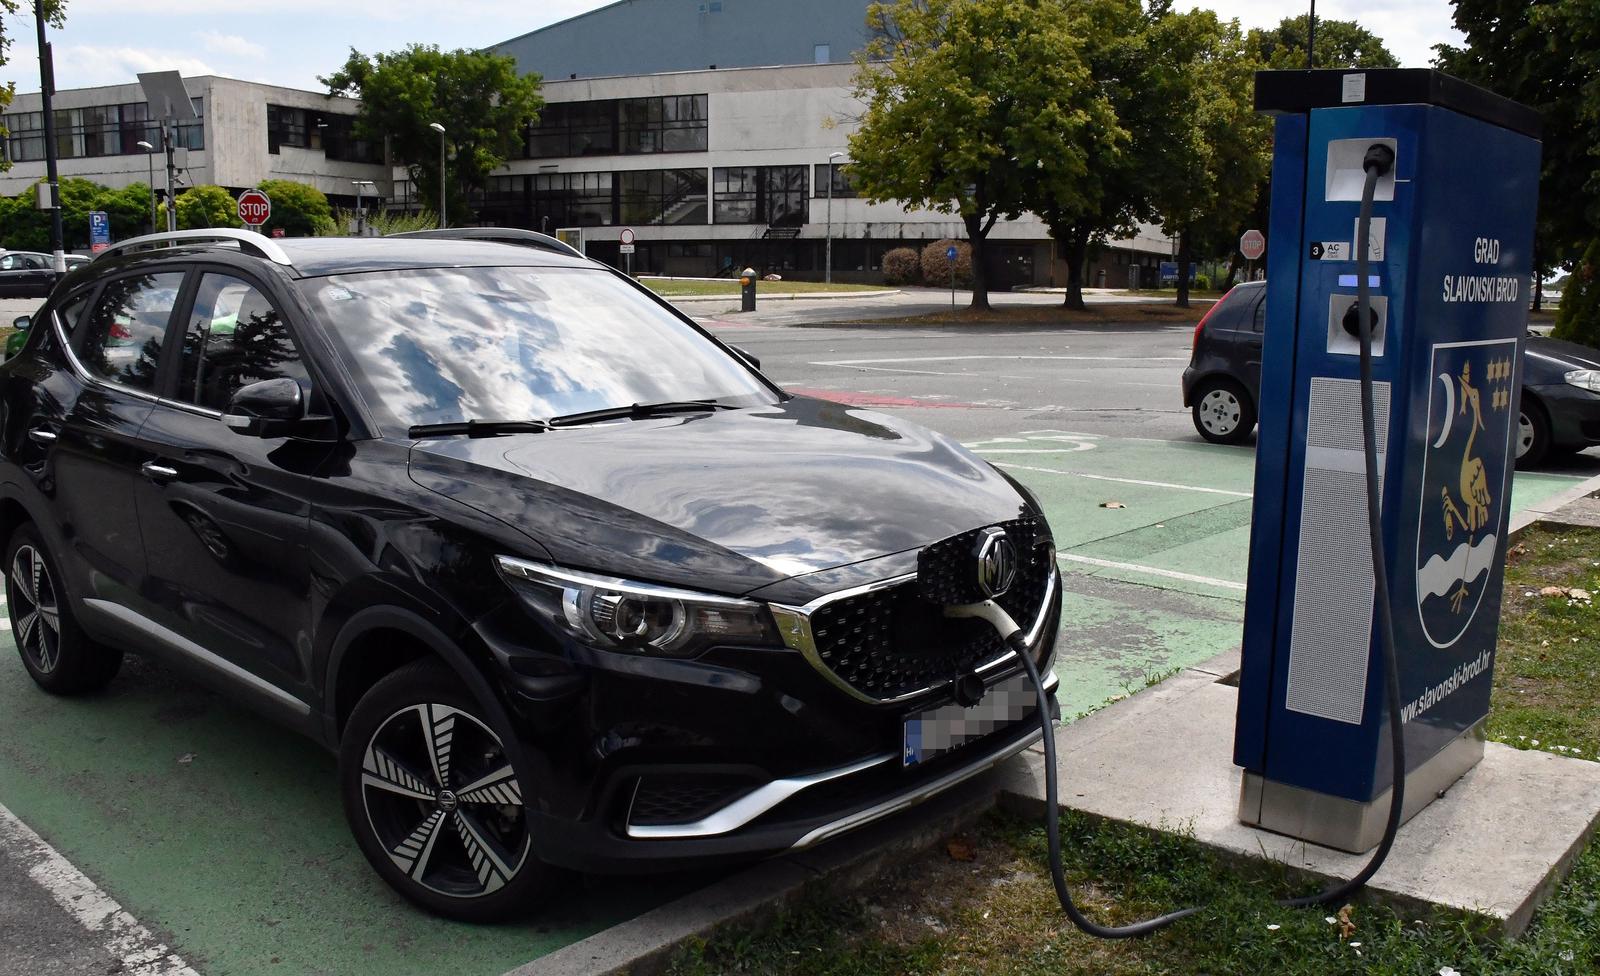 12.08.2022., Slavonski Brod - Punjenje baterija elektricnog automobila na javnom sustavu za punjenje elektricnih vozila. Photo: Ivica Galovic/PIXSELL